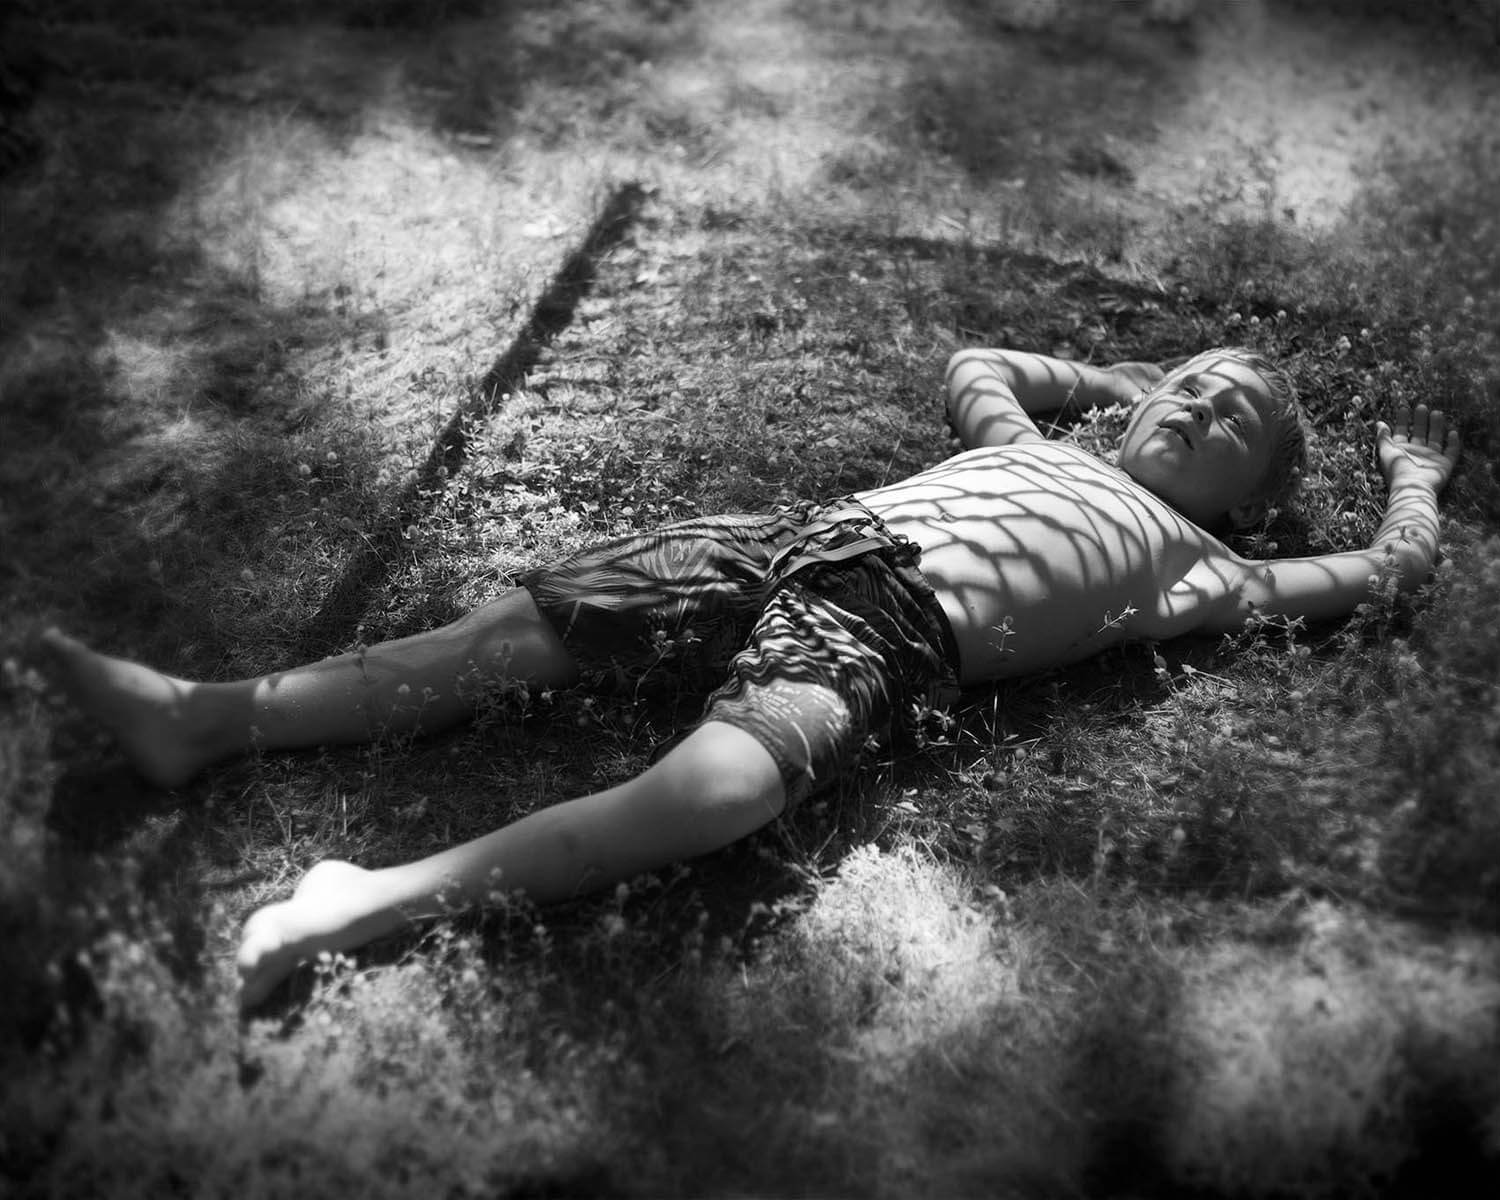 Boy in hammock - By Daniel Coburn